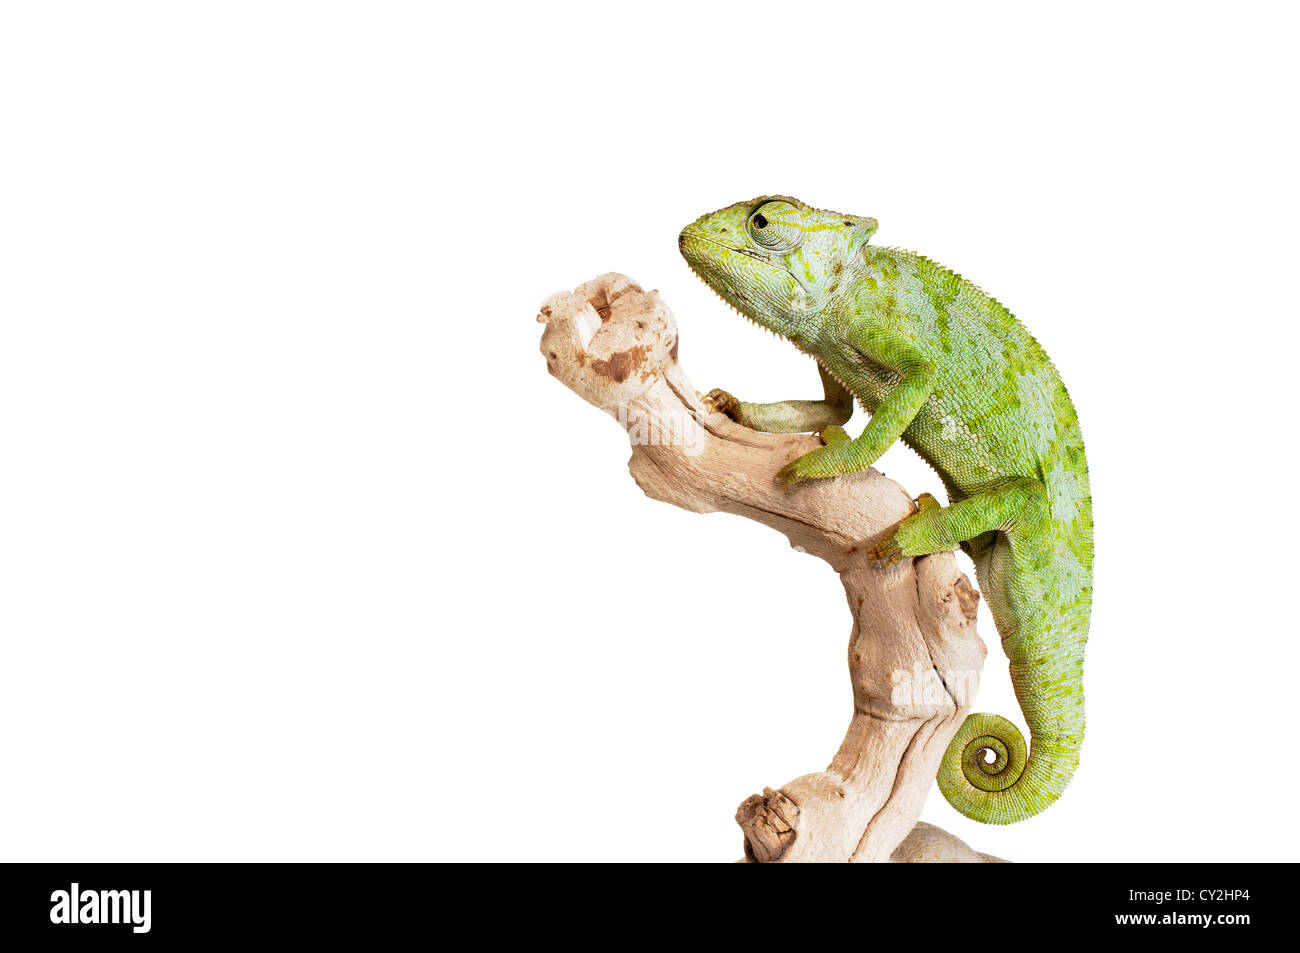 Grazioso Chameleon su sfondo bianco. Foto Stock